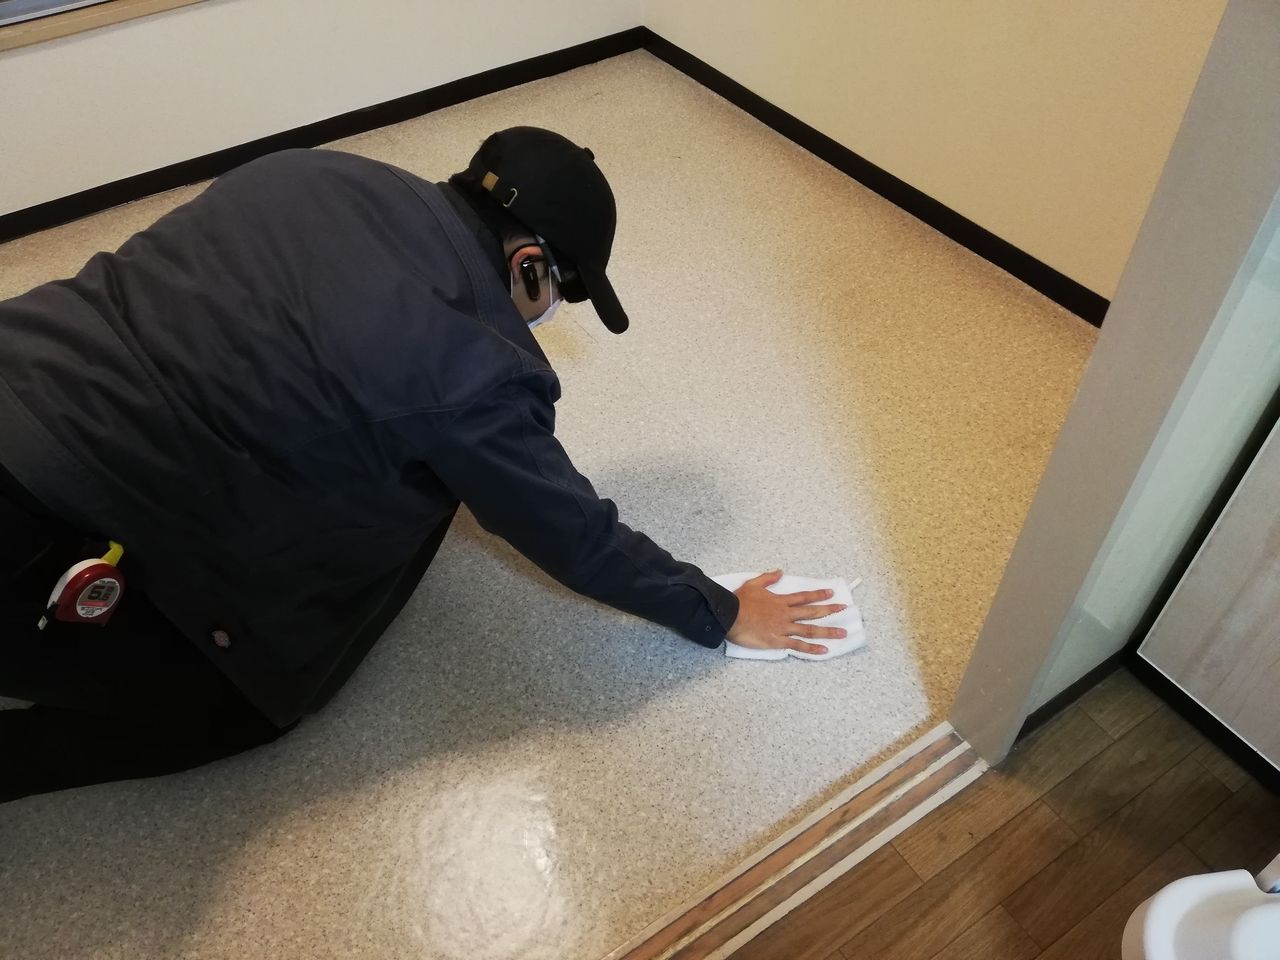 合板の仮敷きが終われば床の掃除をします。
掃除機を使って埃をとり、雑巾がけをして床をキレイにします。
この掃除は次の作業をする上で重要なので、しっかりとやります。